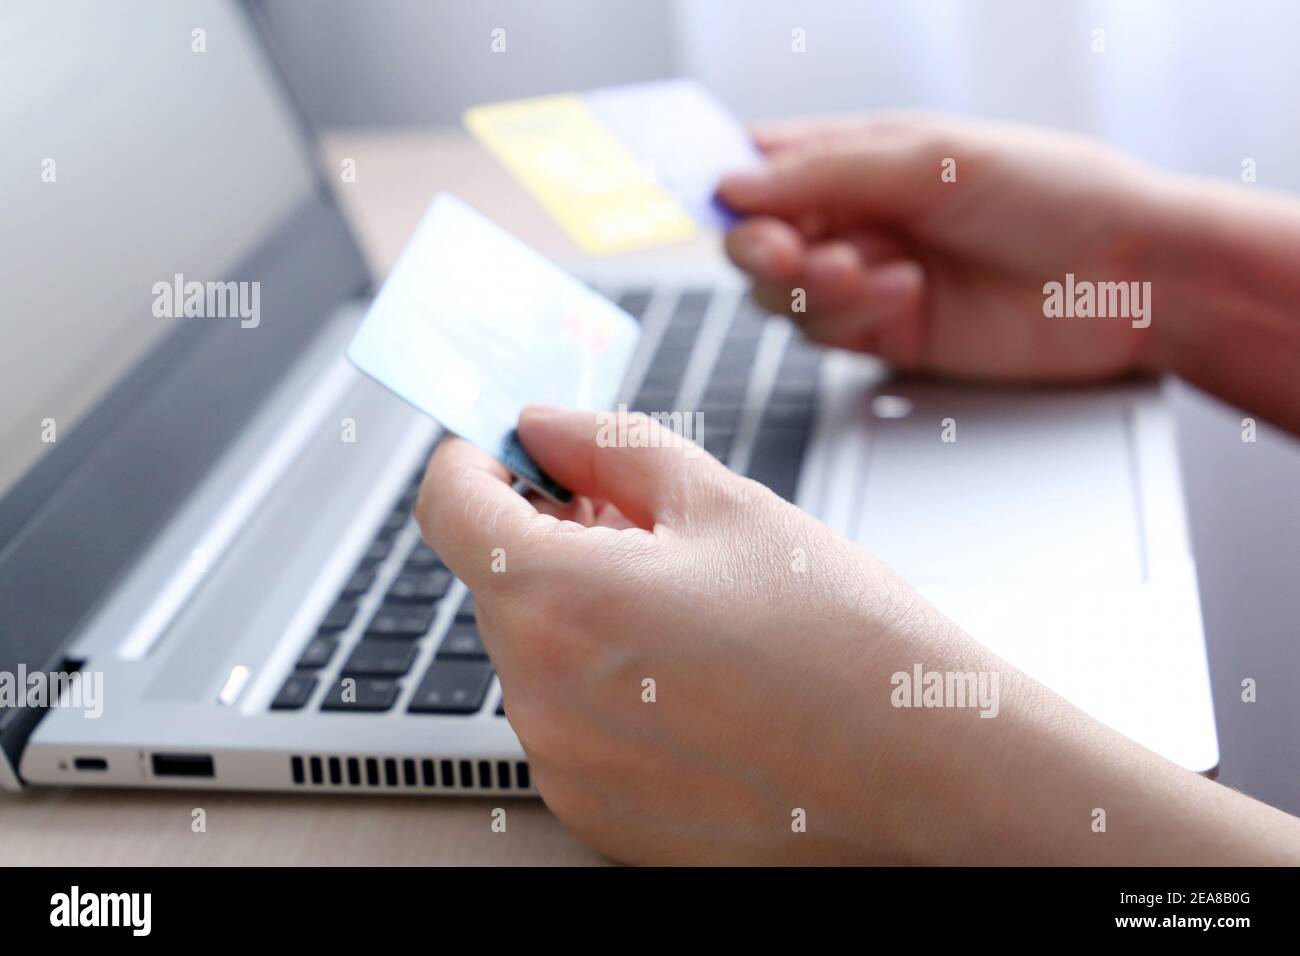 Cartes de crédit dans les mains des femmes sur l'arrière-plan de l'ordinateur portable. Concept d'achat et de paiement en ligne, de remise, de transactions financières Banque D'Images